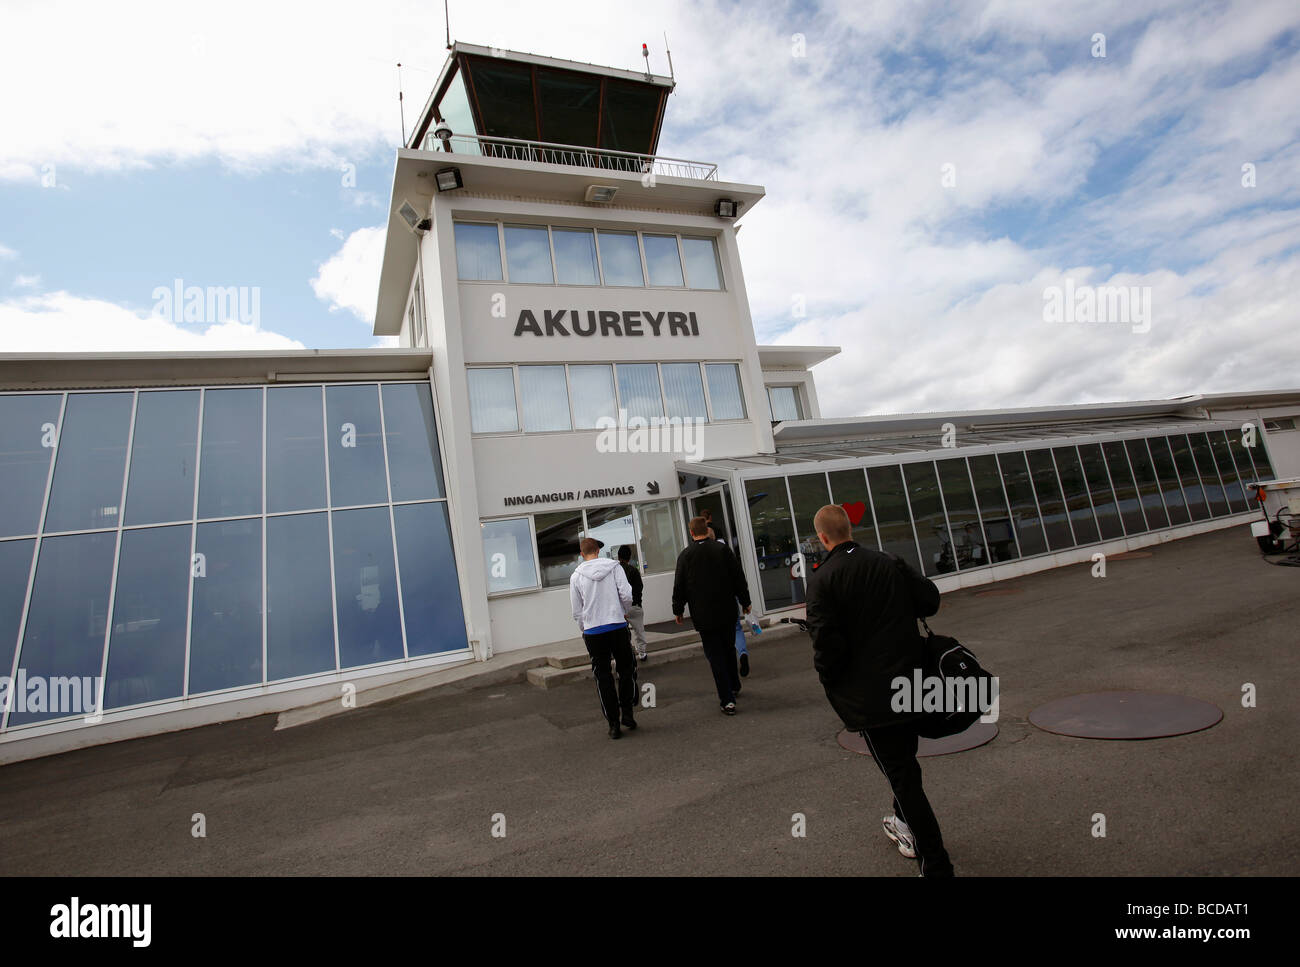 Les passagers arrivant à l'aérogare à l'aéroport de Akureyri, Islande Banque D'Images